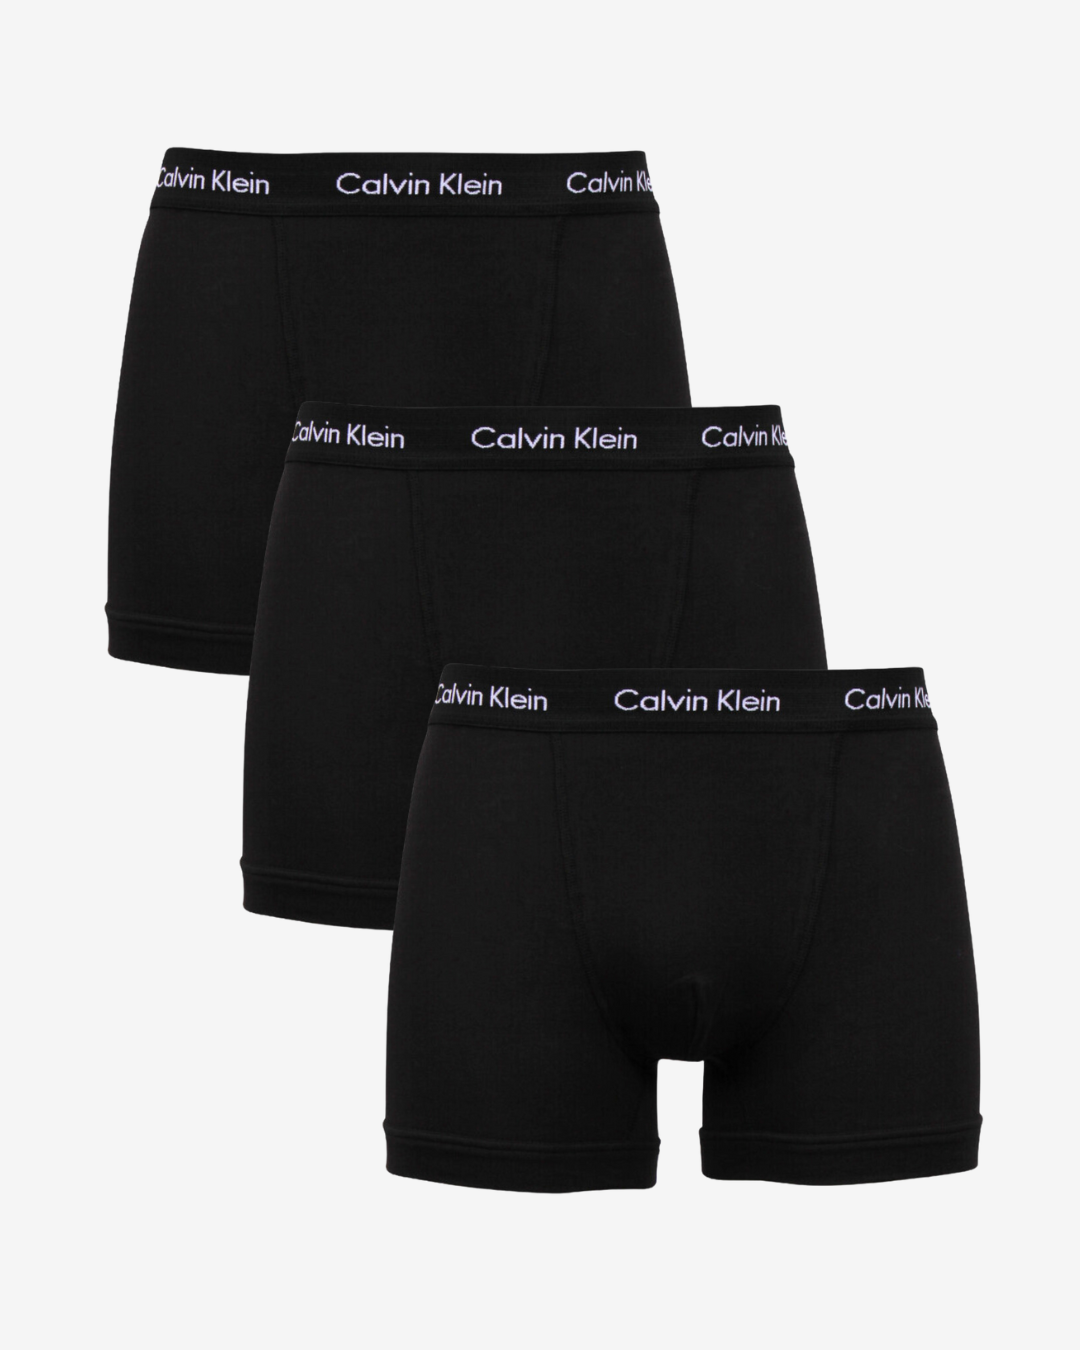 Se Calvin Klein Underbukser trunks 3-pak - XWB Sort - Str. L - Modish.dk hos Modish.dk